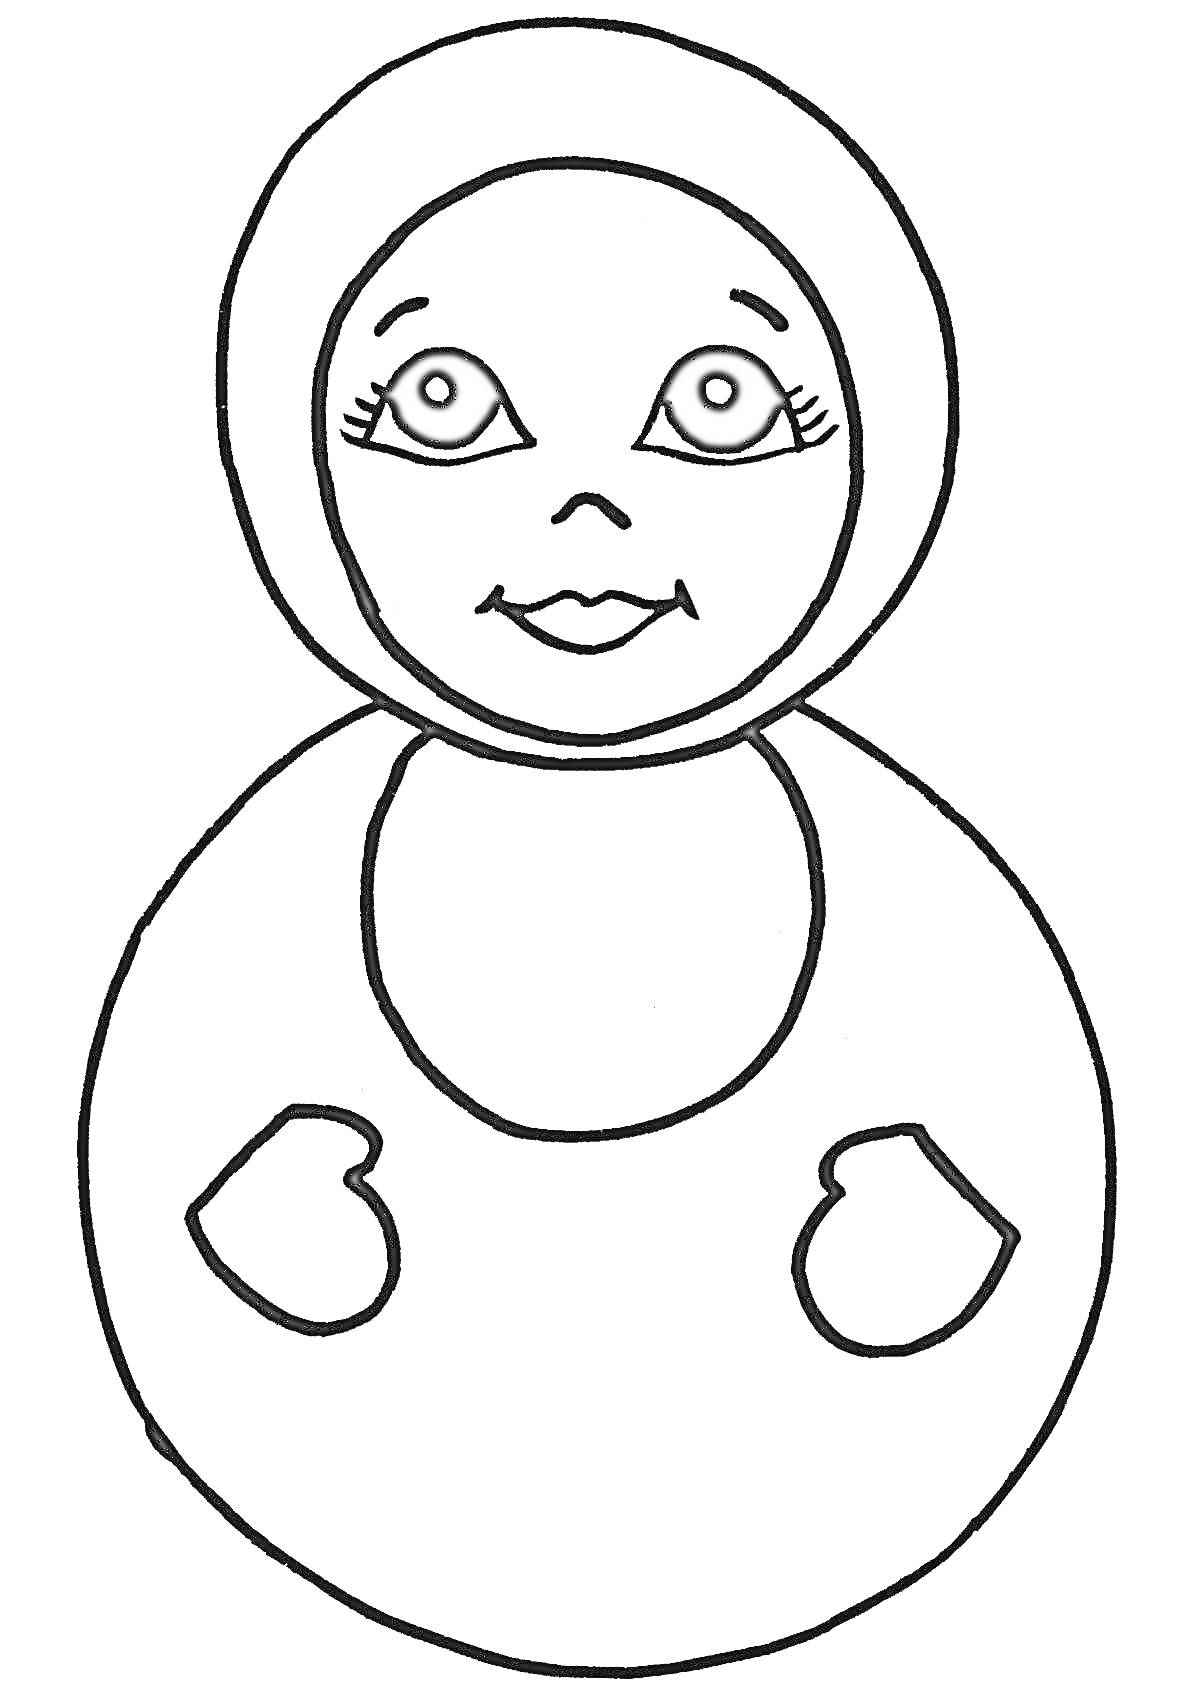 Раскраска Неваляшка с лицом, глазами, носом, ртом и двумя сердцами на туловище